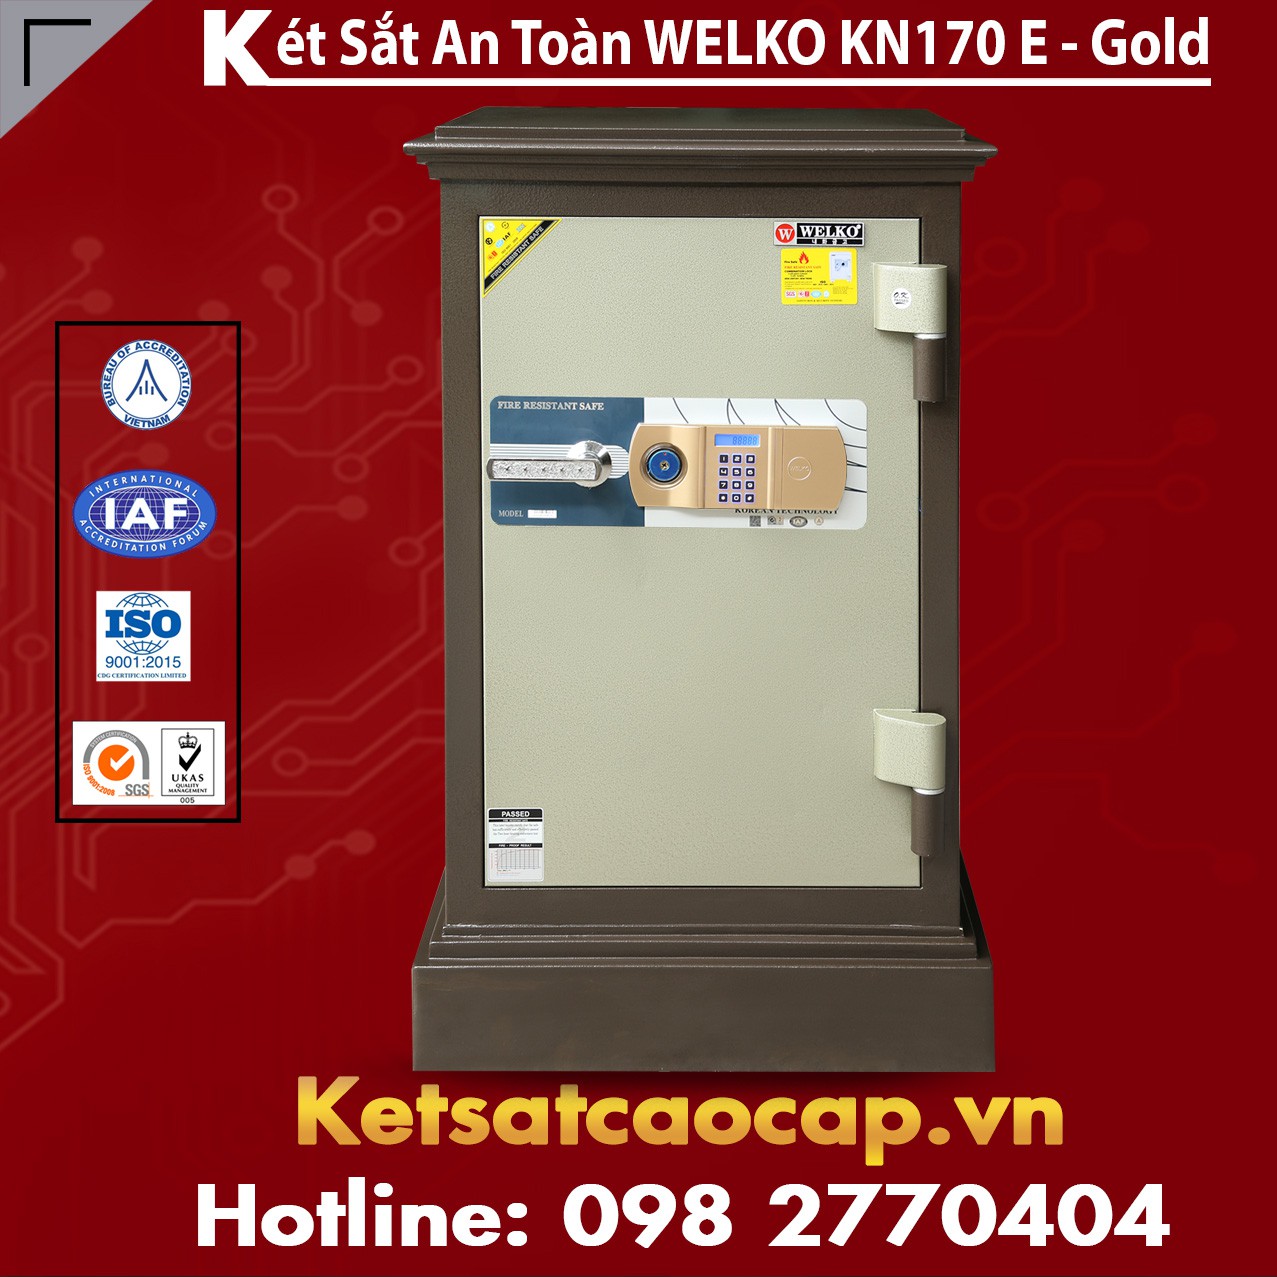 Két Sắt Công Ty Văn Phòng WELKO KN170 Brown - E Gold